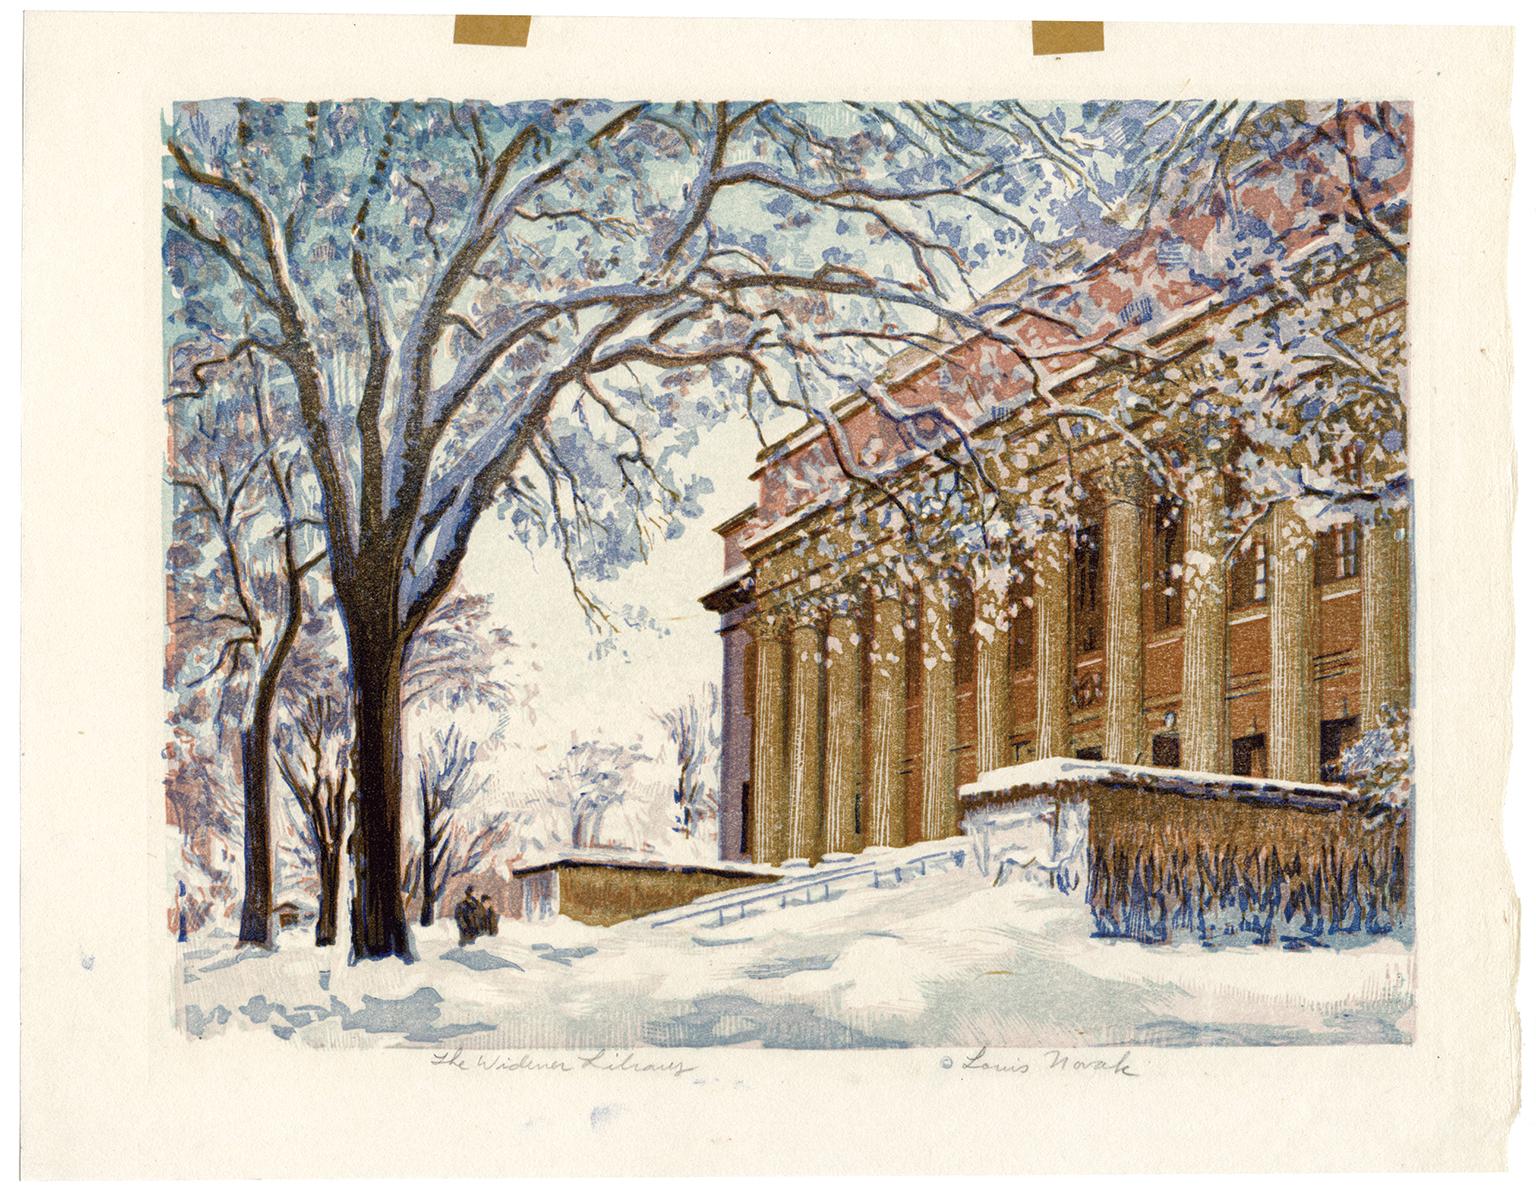 Die Widener Library (Harvard University) – Print von Louis Novak